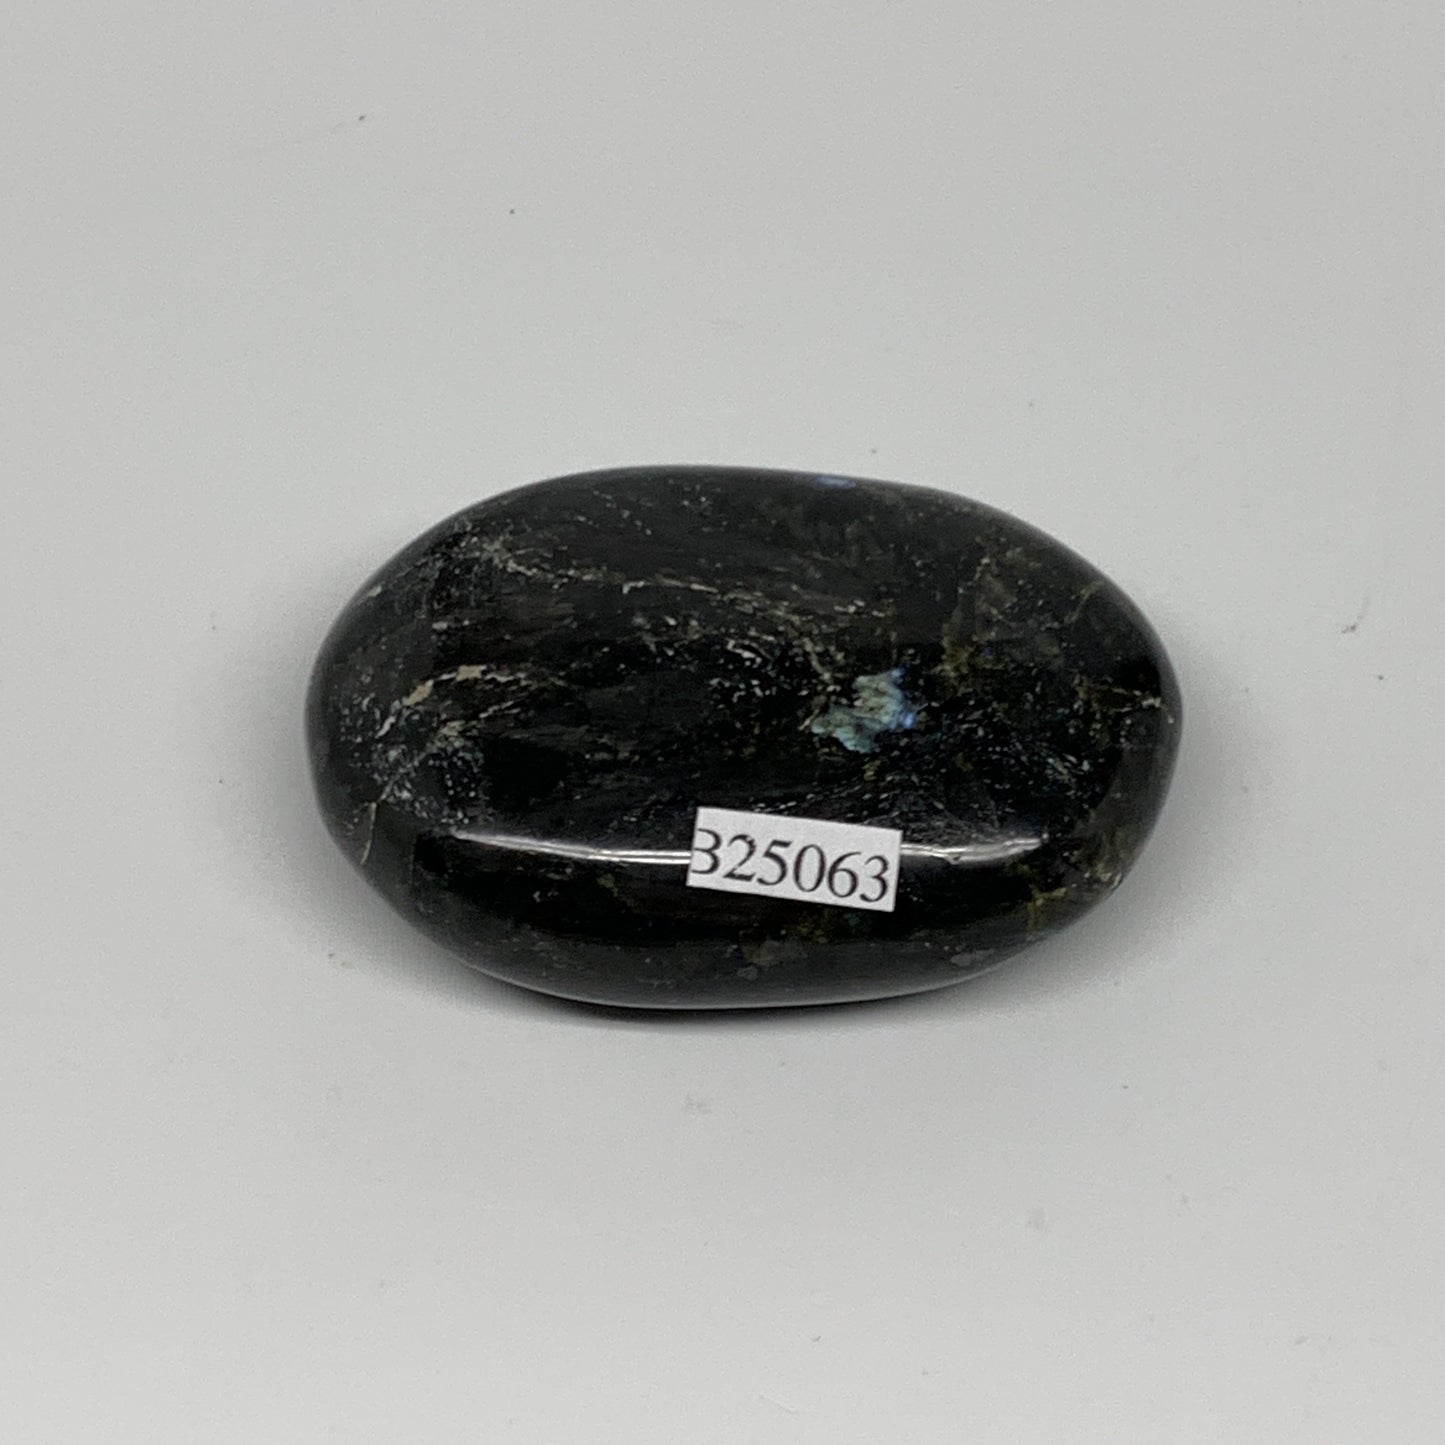 69.7g,2.2"x1.5"x0.7", Labradorite Palm-stone Tumbled Reiki @Madagascar,B25063